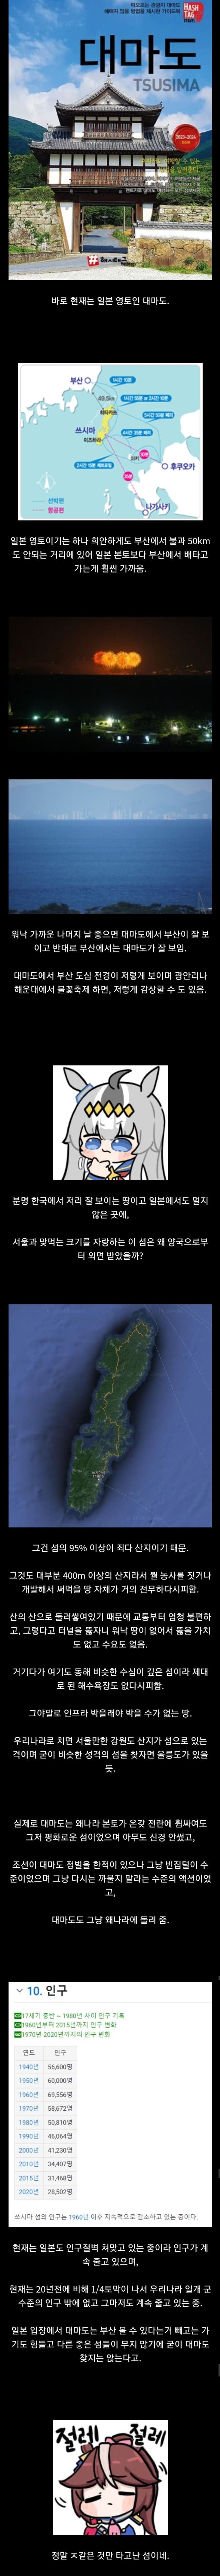 한국 일본으로부터 둘다 쓸모 없다고 버려진 섬